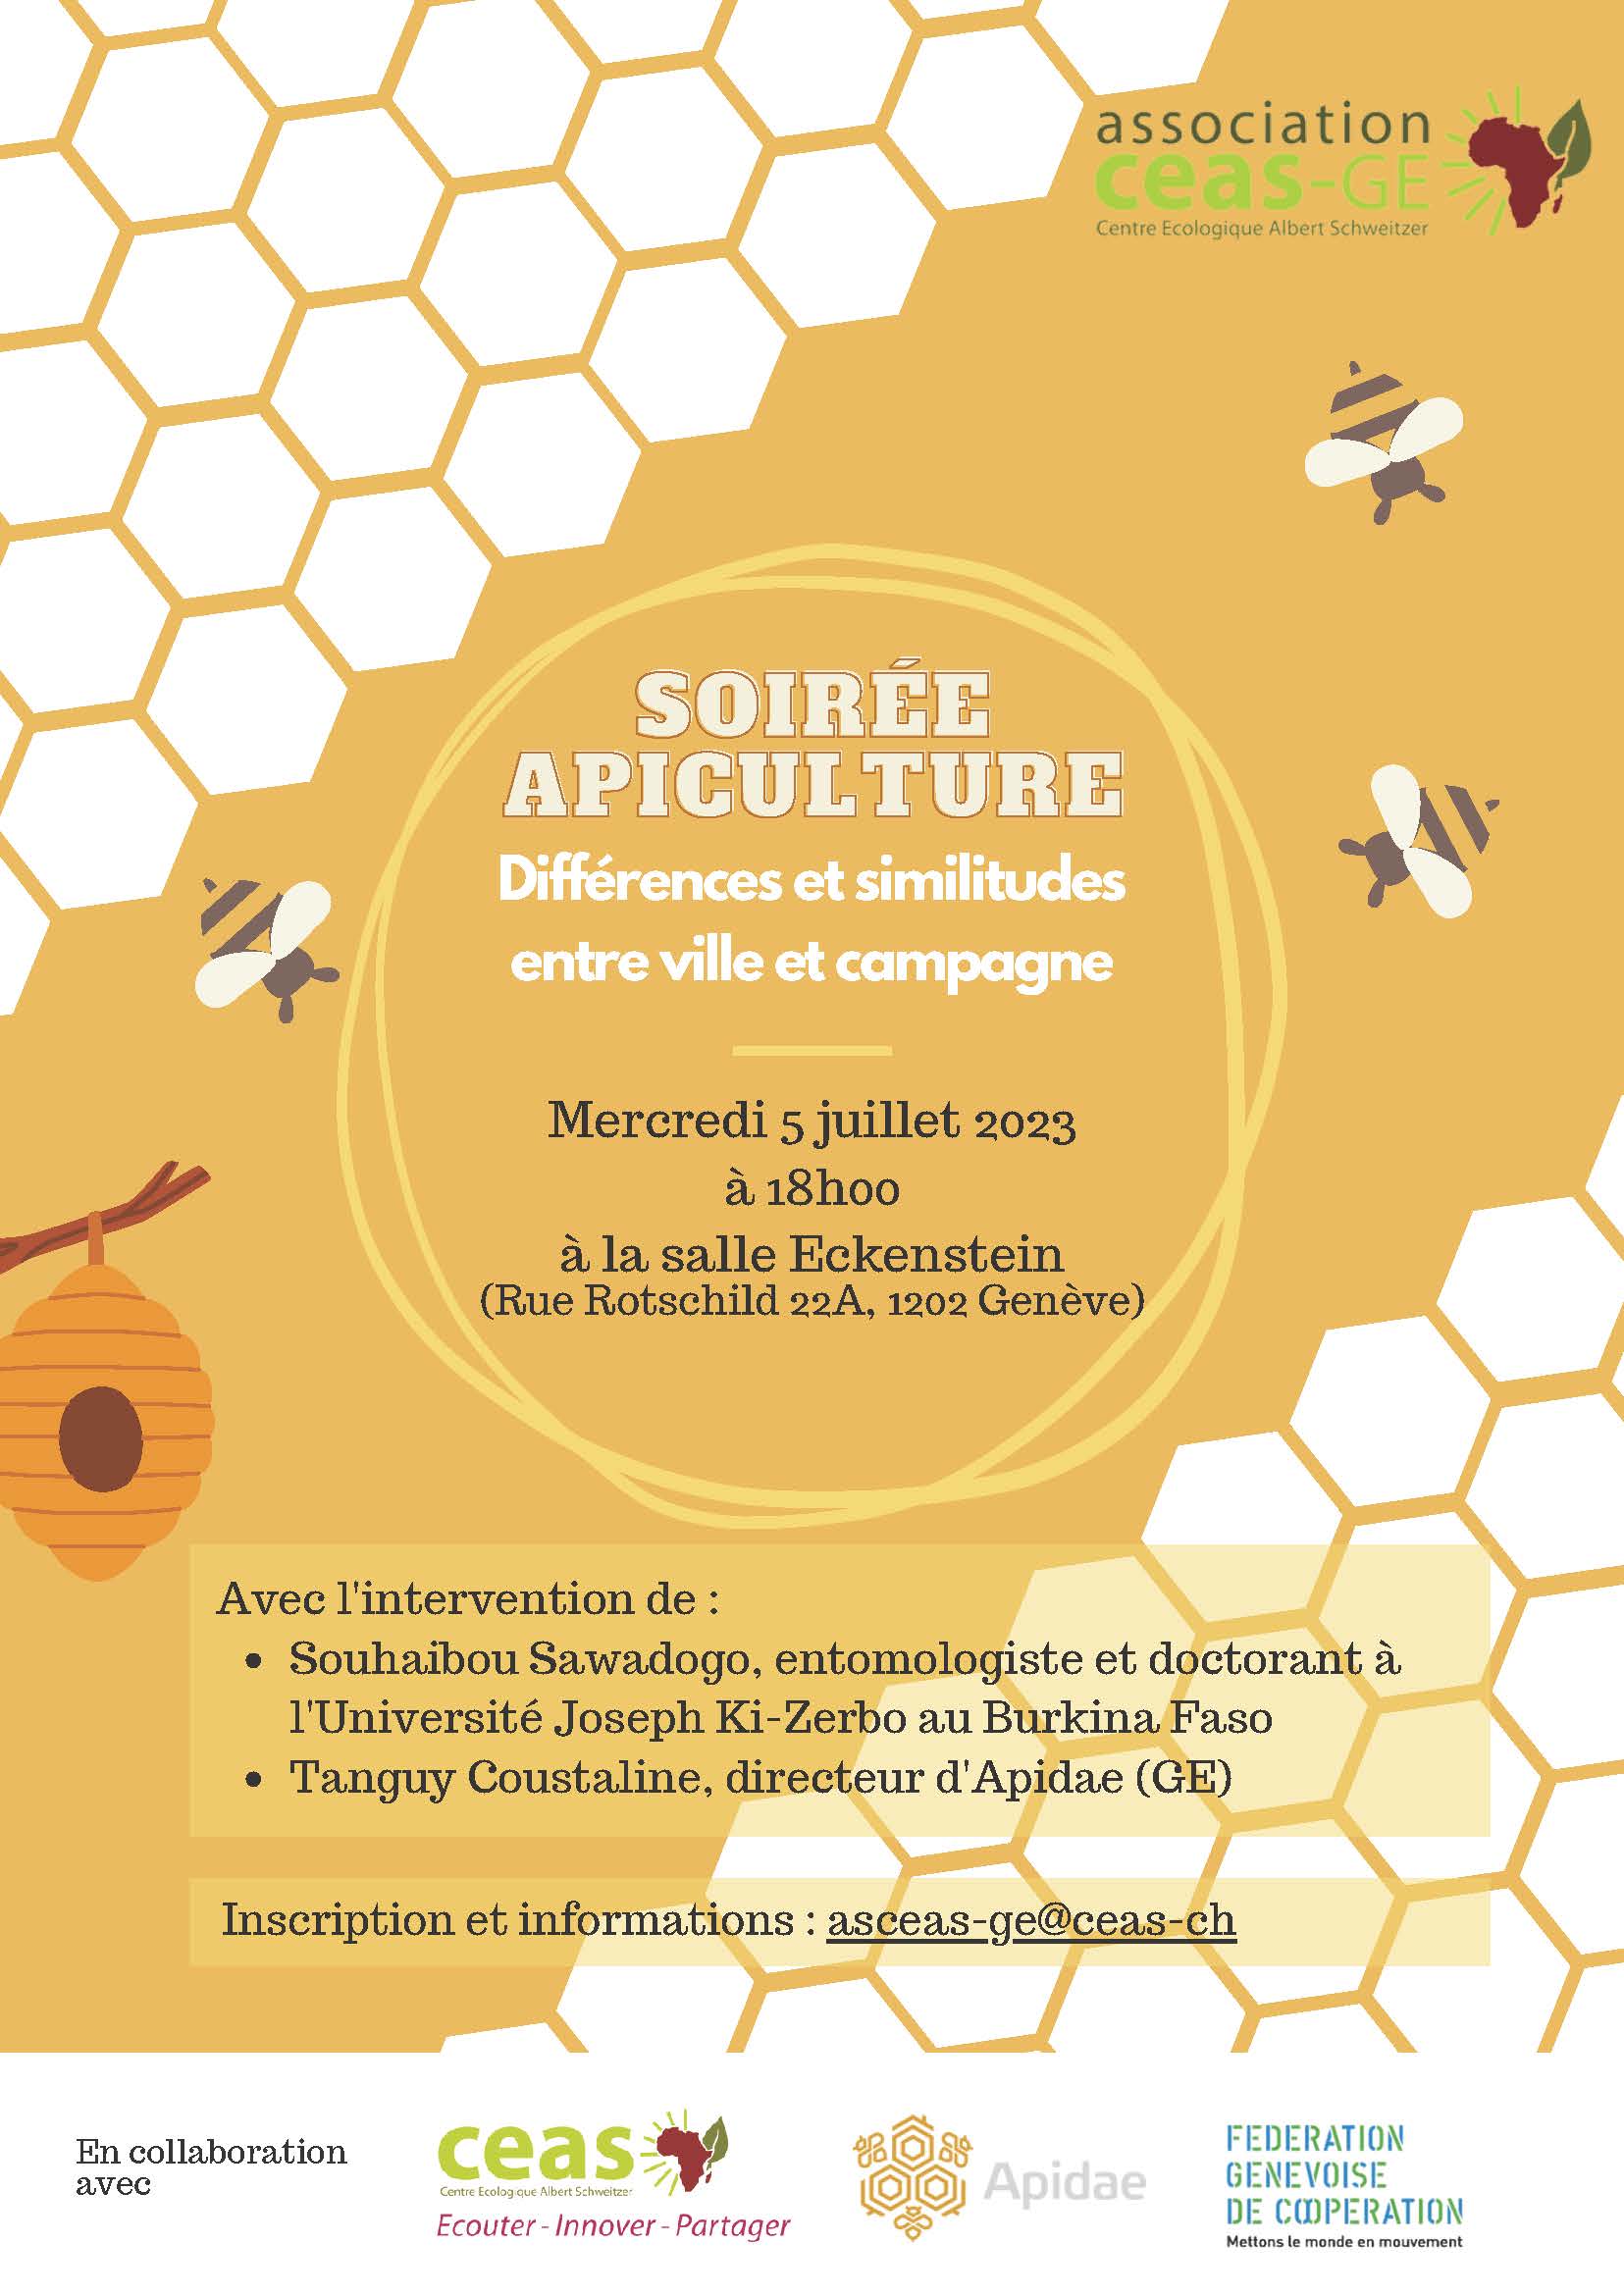 Soirée apiculture ASCEAS Genève